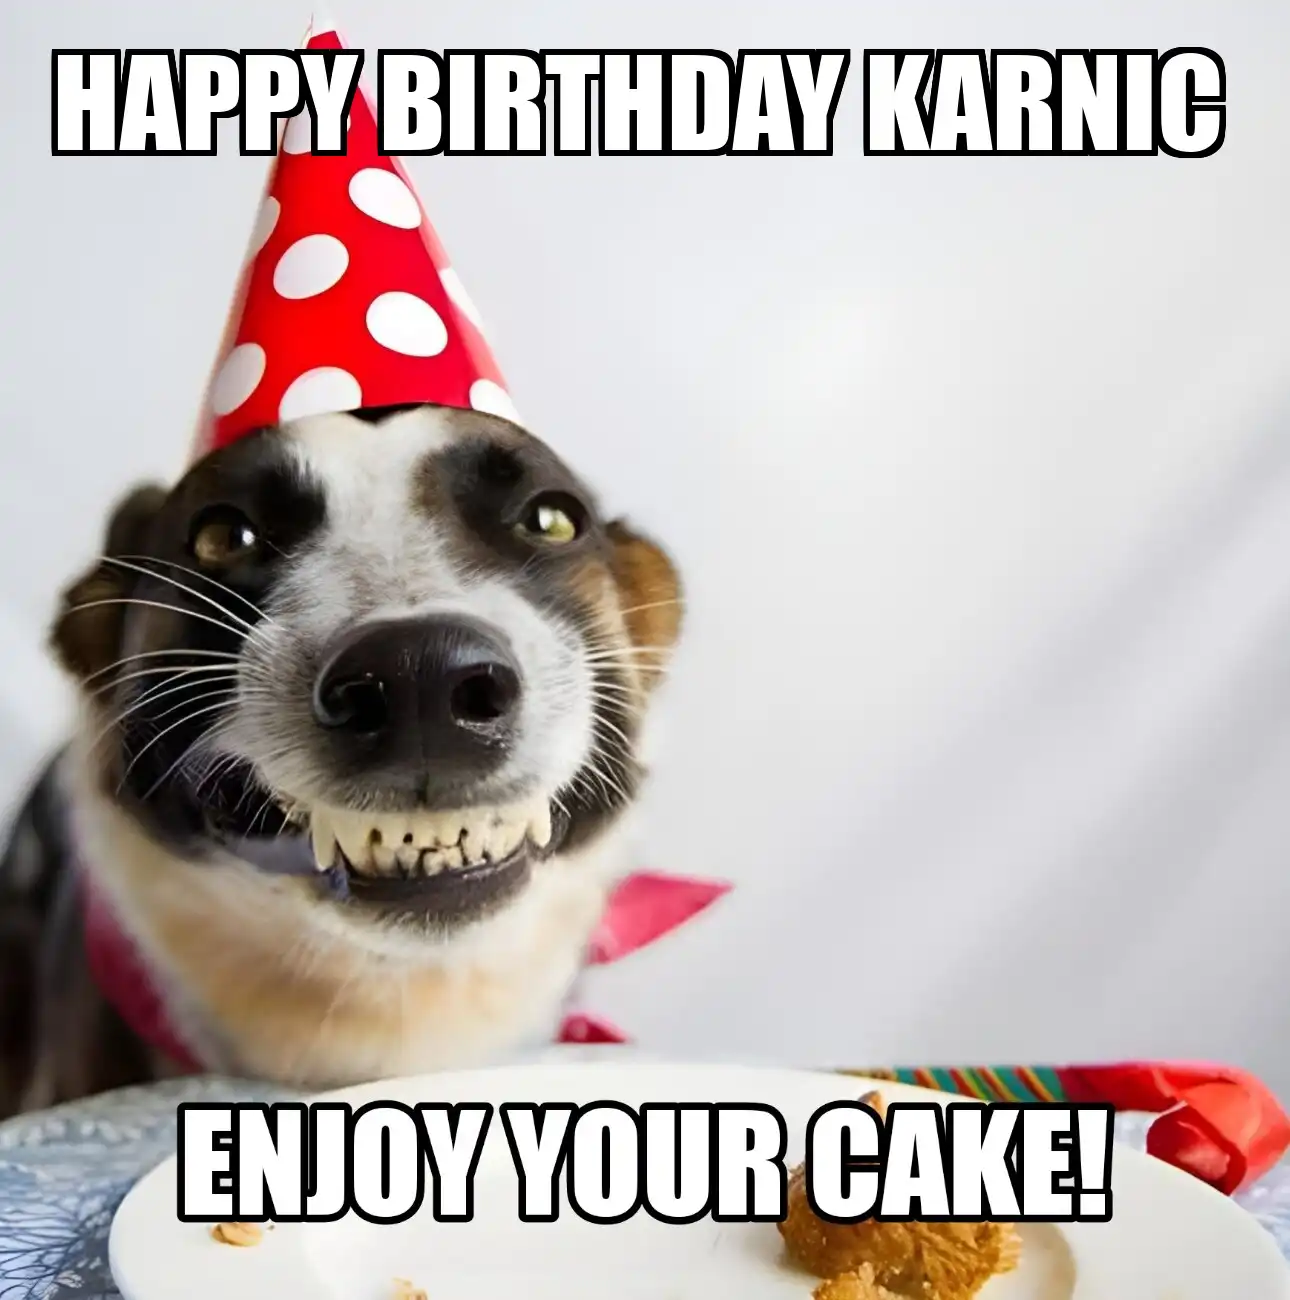 Happy Birthday Karnic Enjoy Your Cake Dog Meme